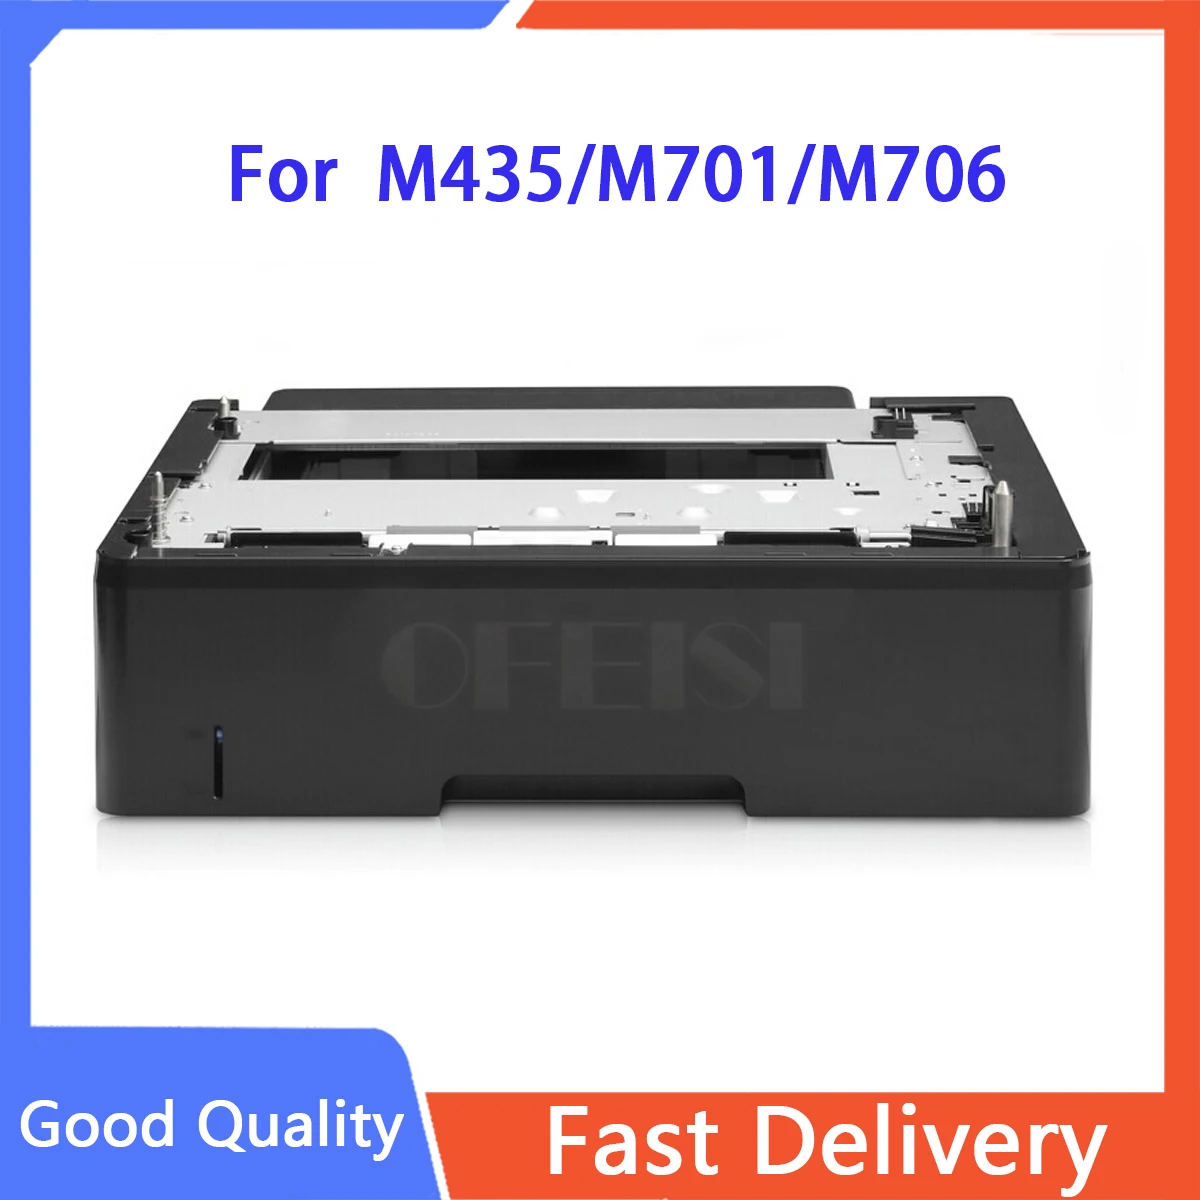 

Новый оригинальный для HP M435/M701/M706 500 листов Tray3 A3E47A фотодетали принтера в продаже